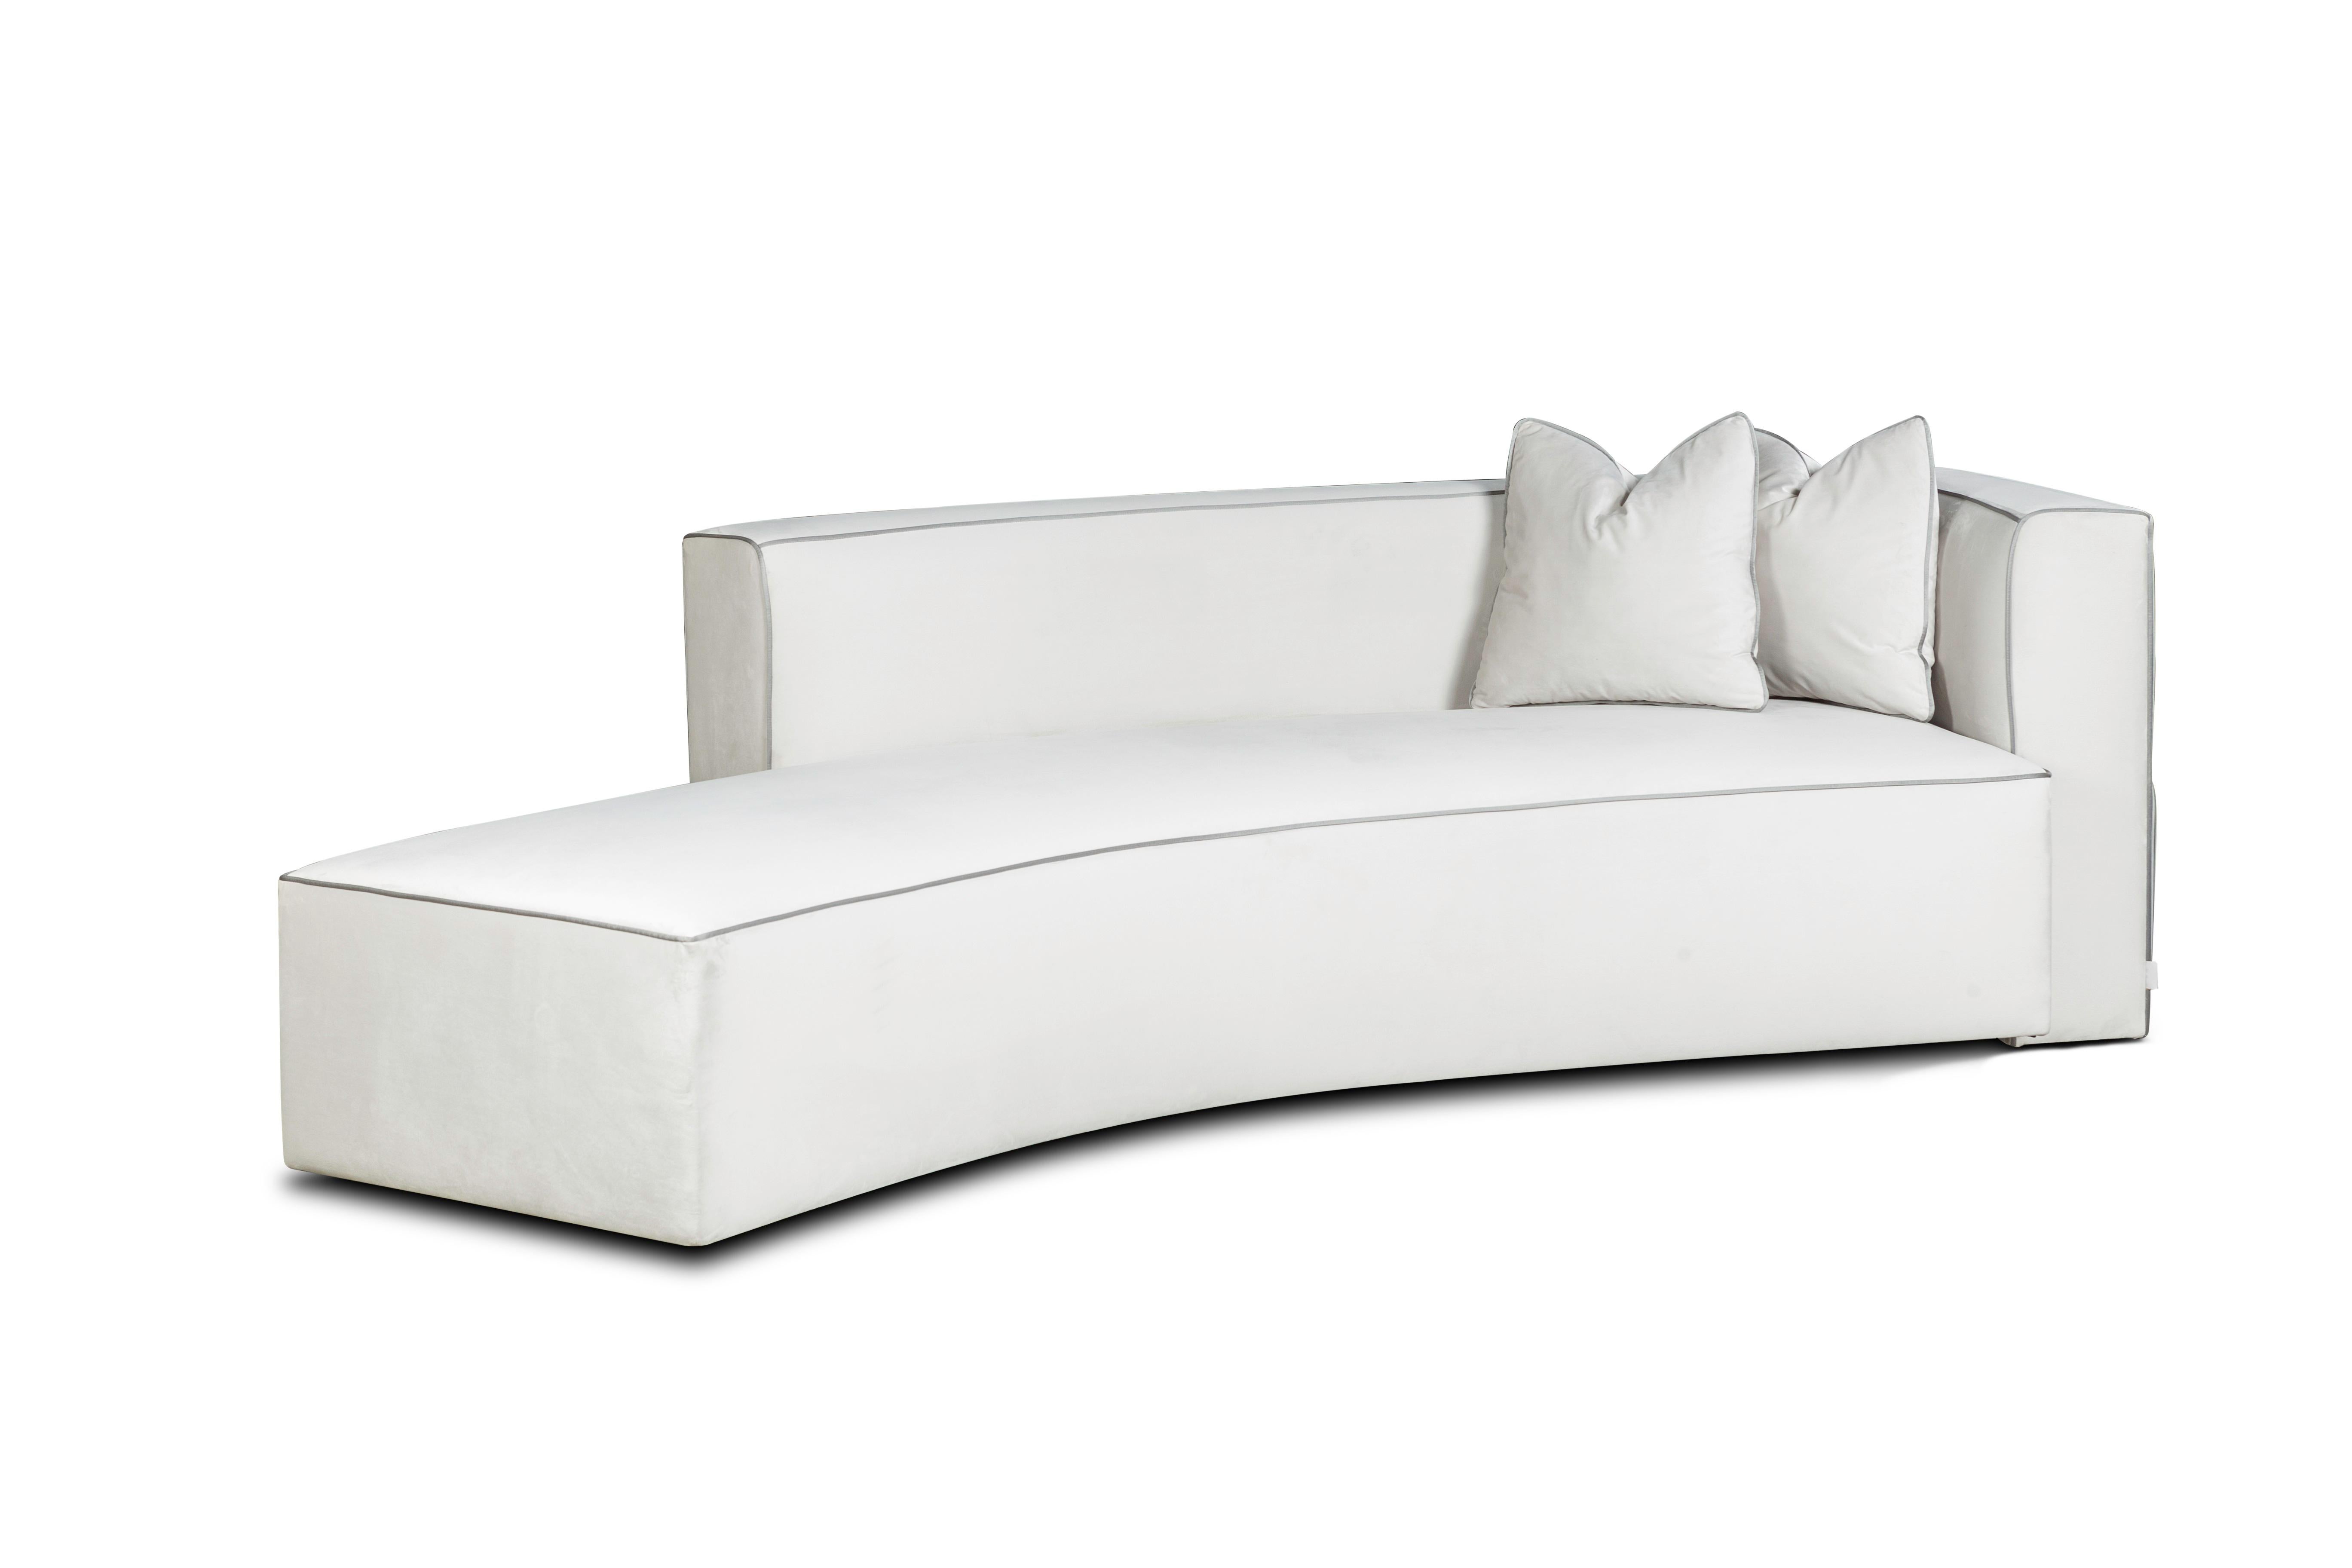 Portuguese Belong Curve Sofa by Memoir Essence For Sale